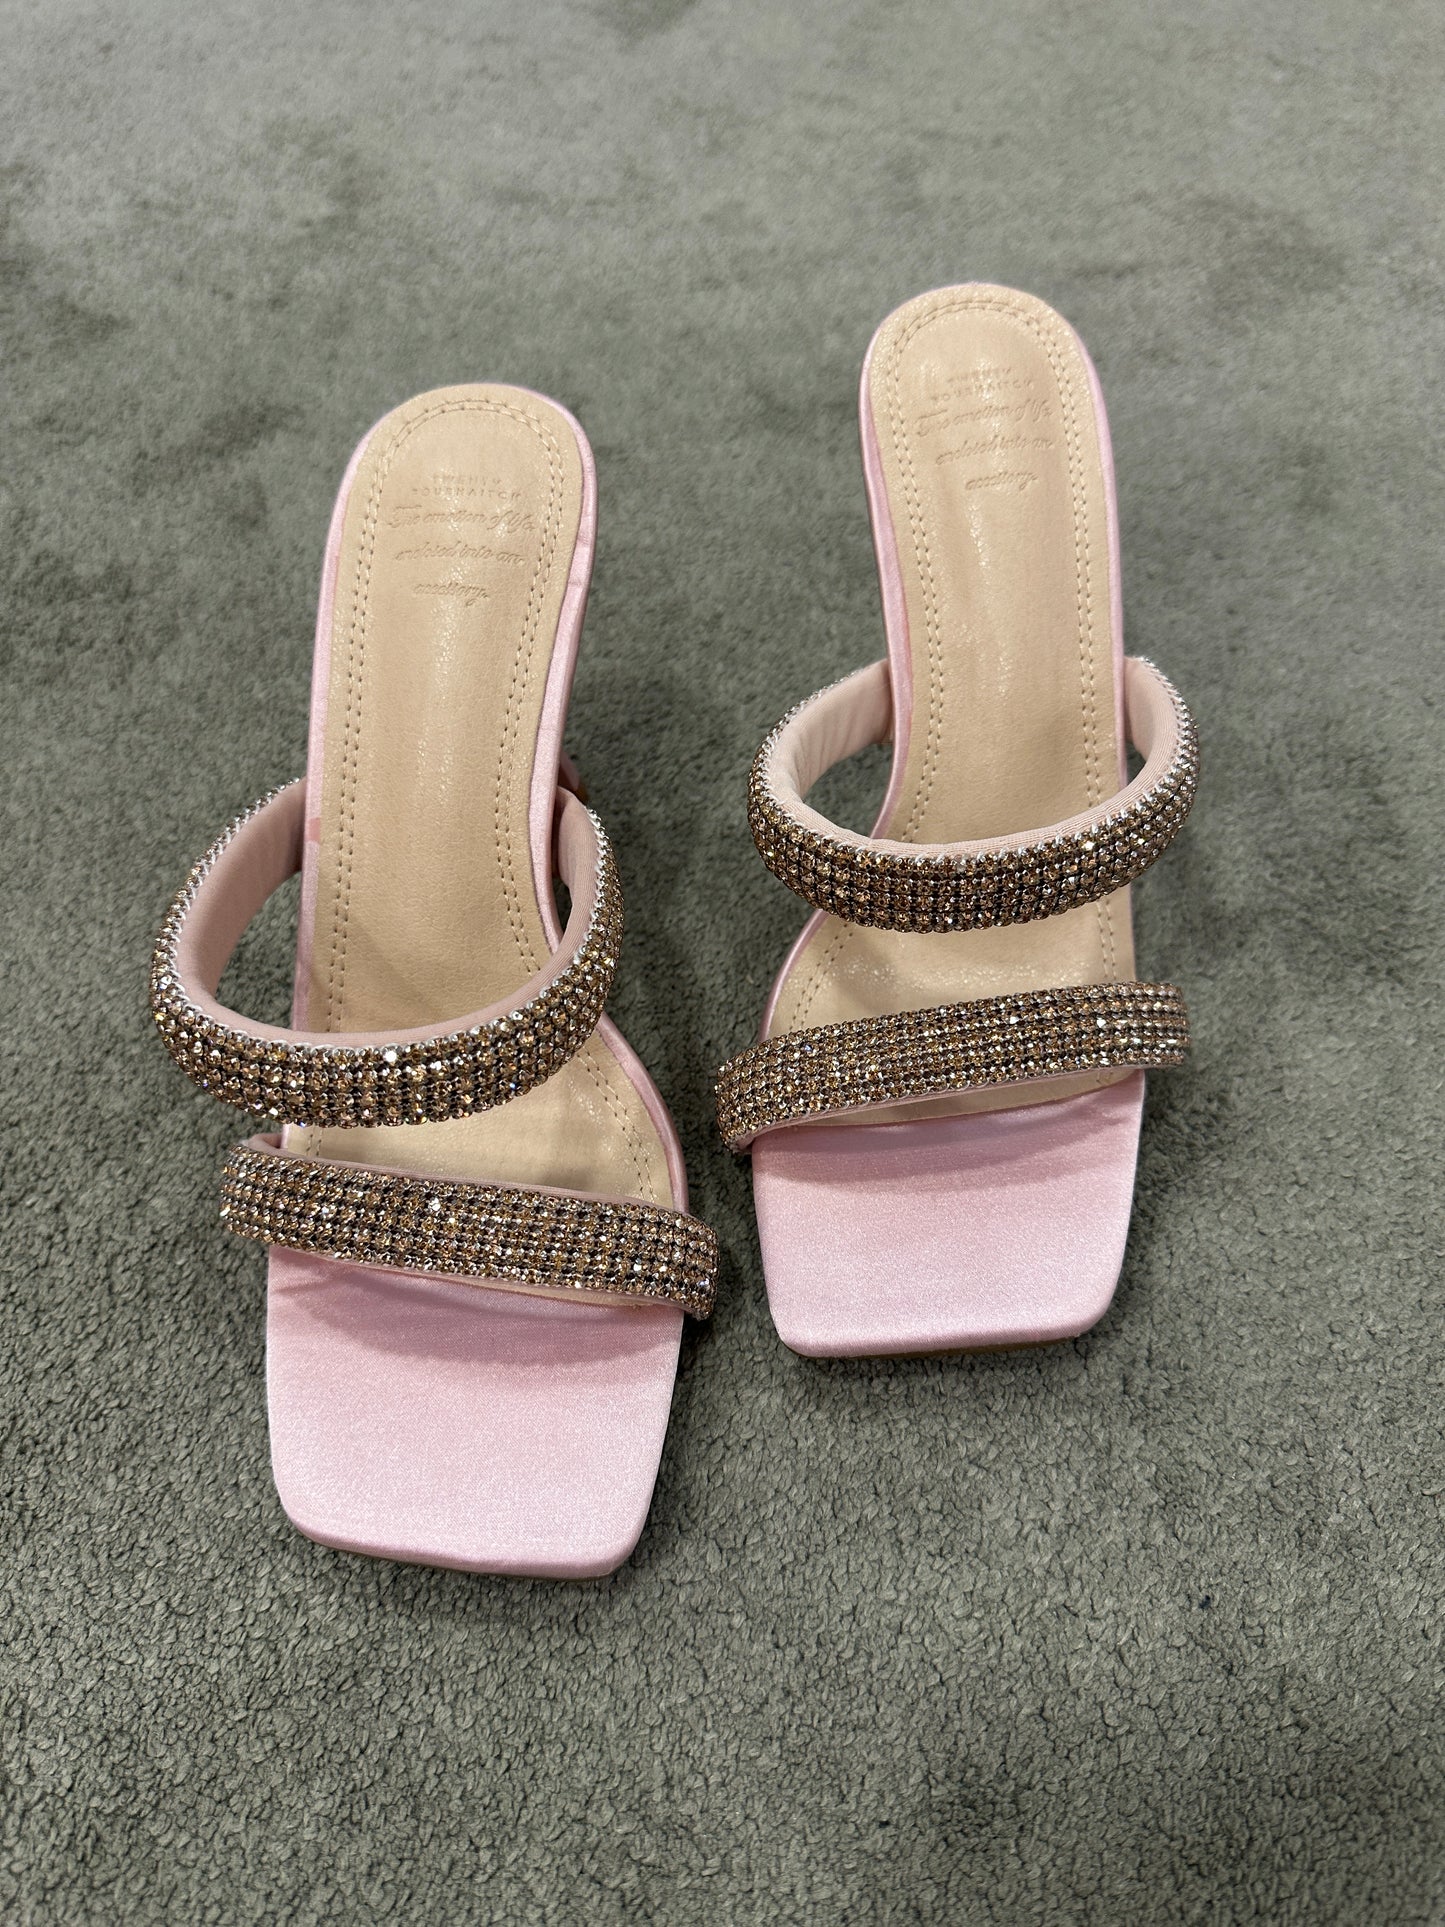 Sandalo doppia fascia rosa cipria crystal